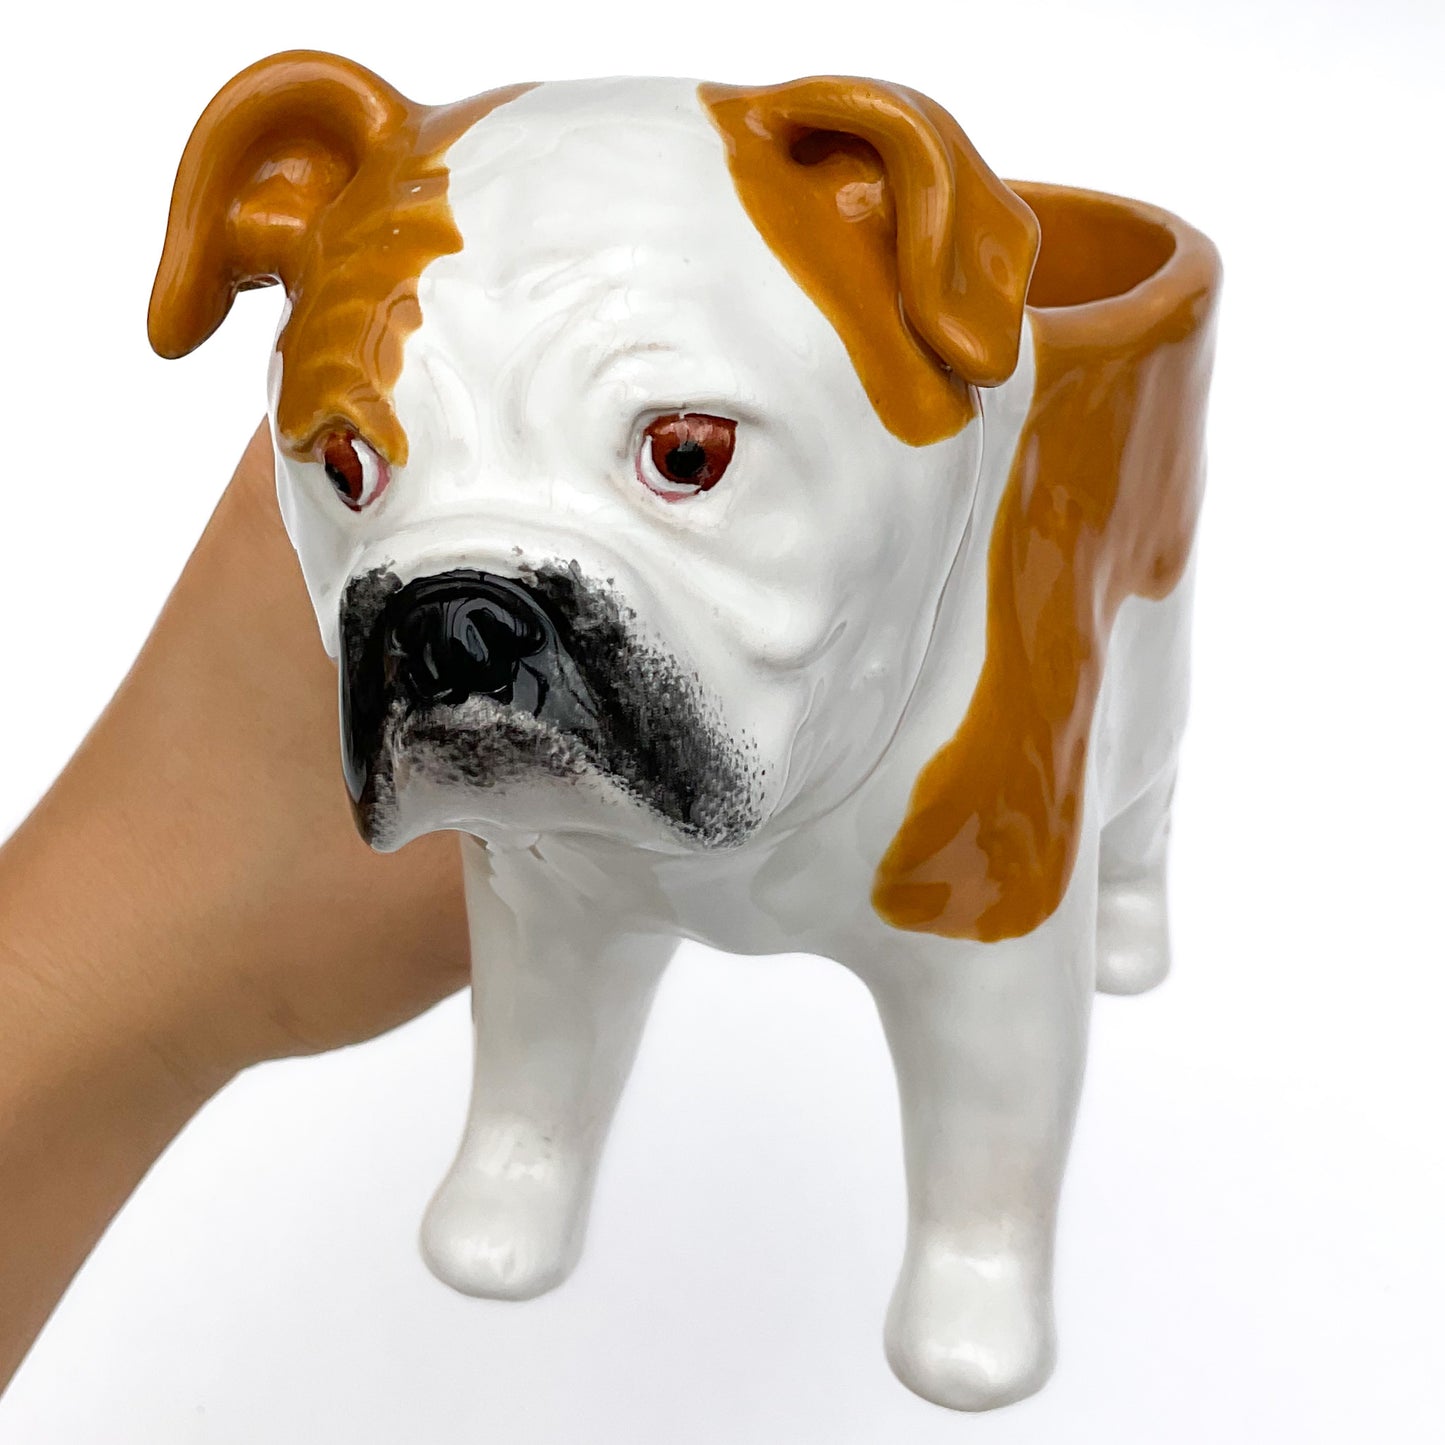 English Bulldog Planter - Ceramic Dog Plant Pot